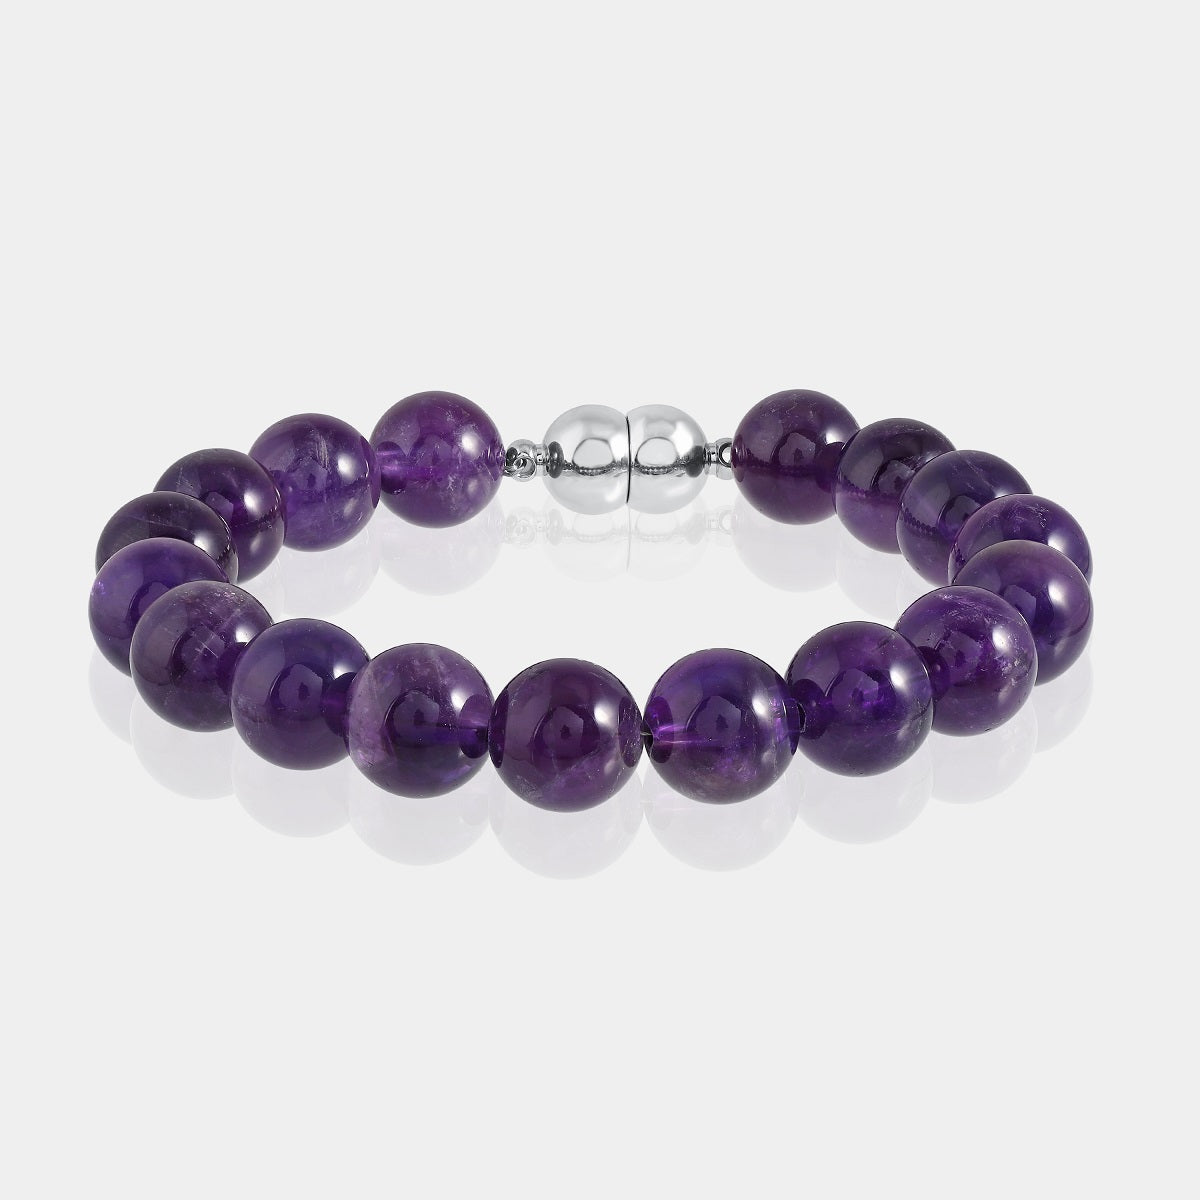 Grade A++ Amethyst Crystal Bead Bracelet 8mm, Purple Amethyst Bracelet,  Bulk Lot | eBay